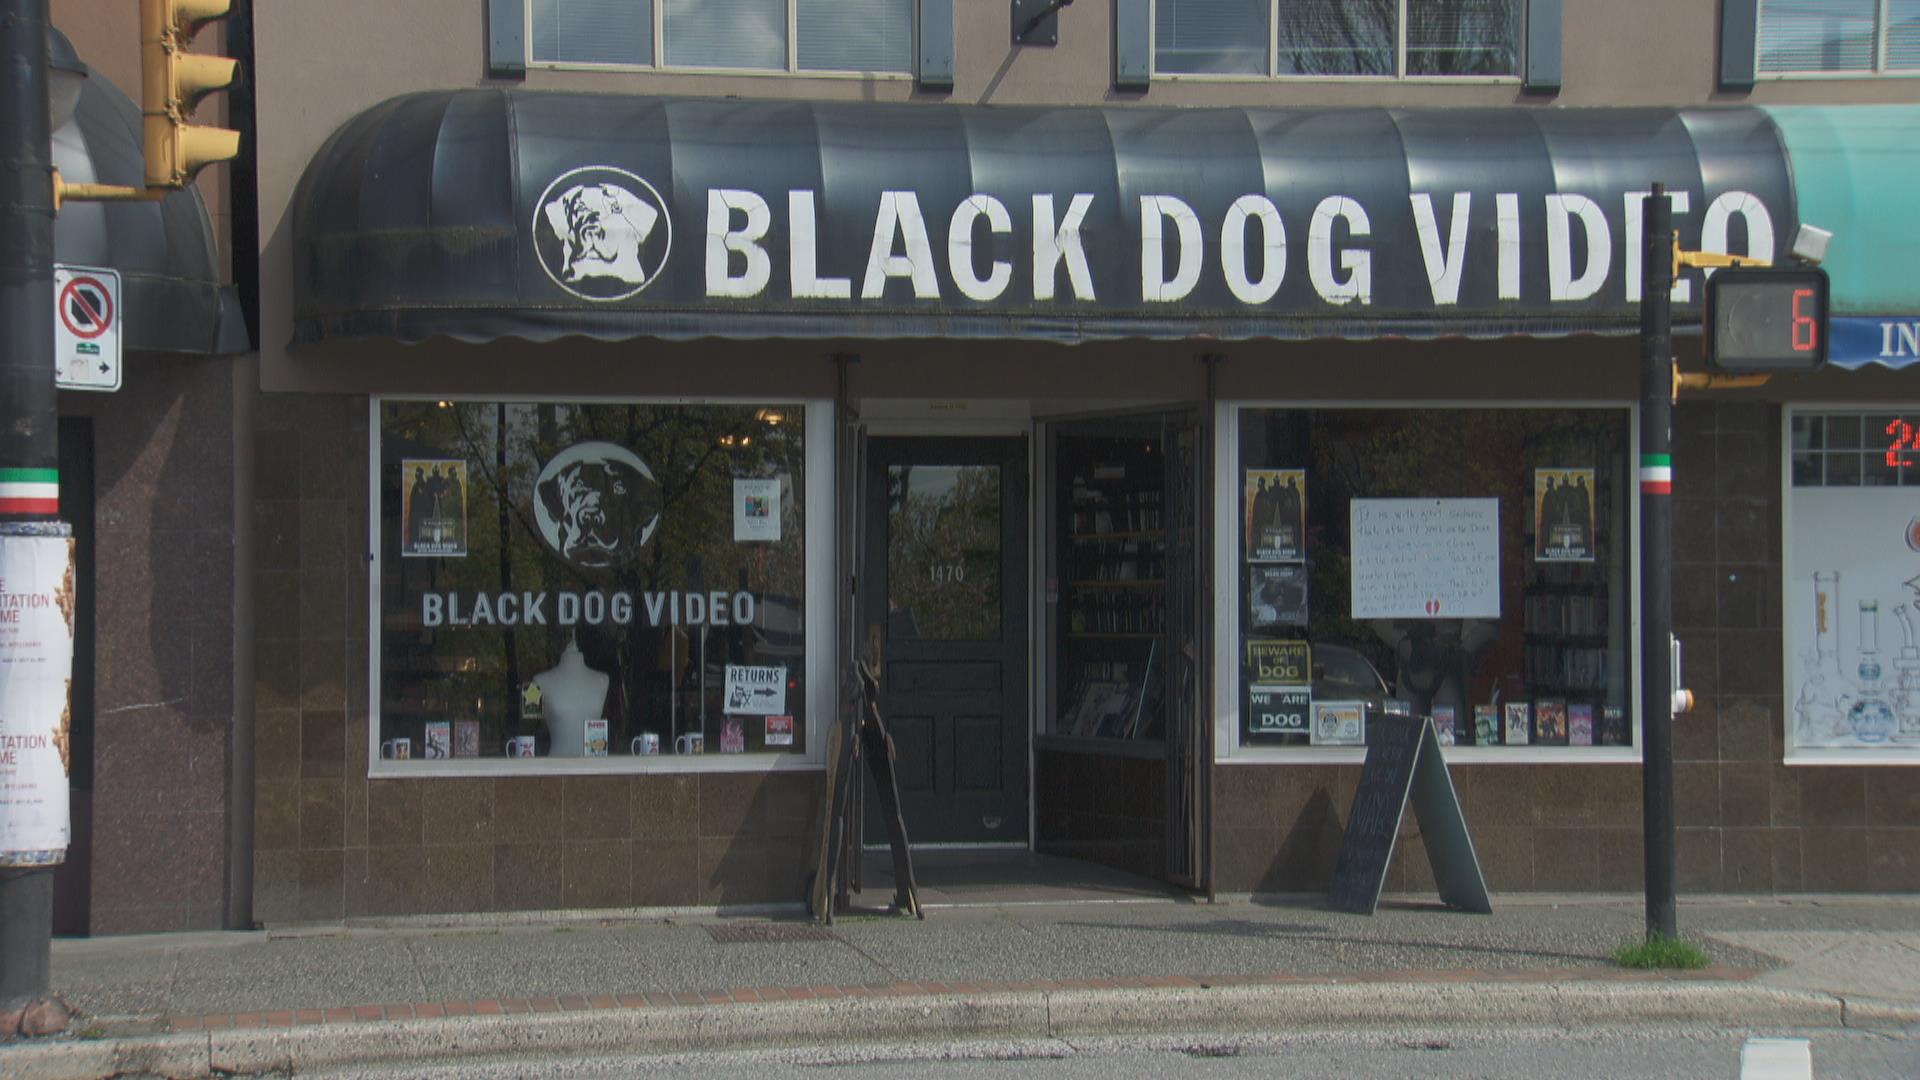 Reportage de Lyne Barnabé : fermeture d'un des derniers clubs vidéos de Vancouver
Reportage de Lyne Barnabé : fermeture d'un des derniers clubs vidéos de Vancouver